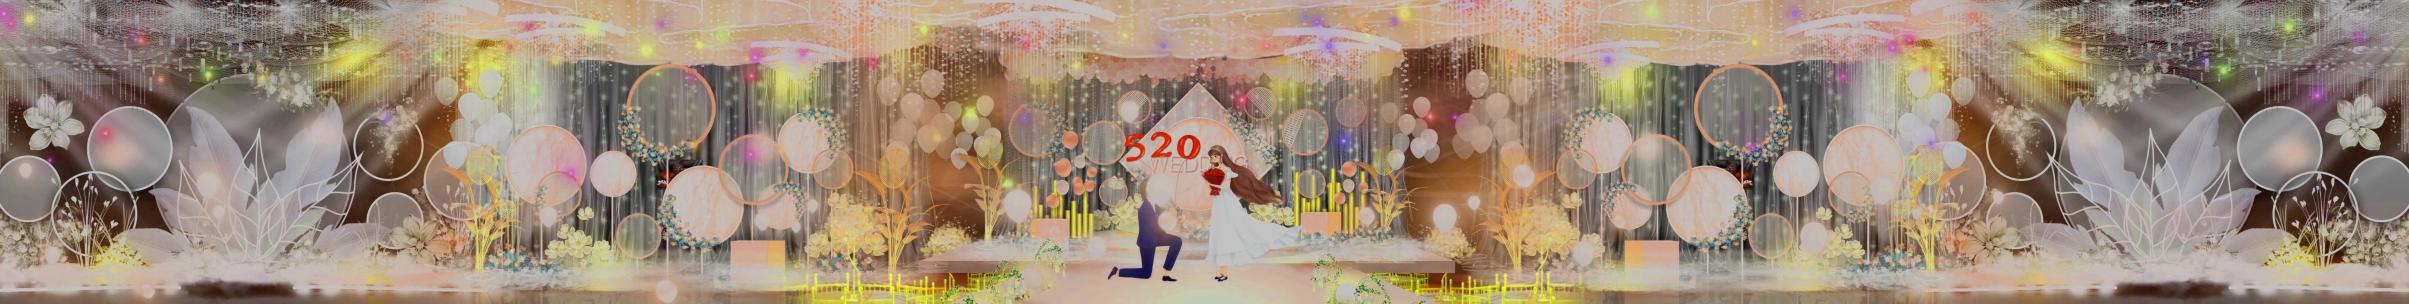 西式婚礼ZE21387